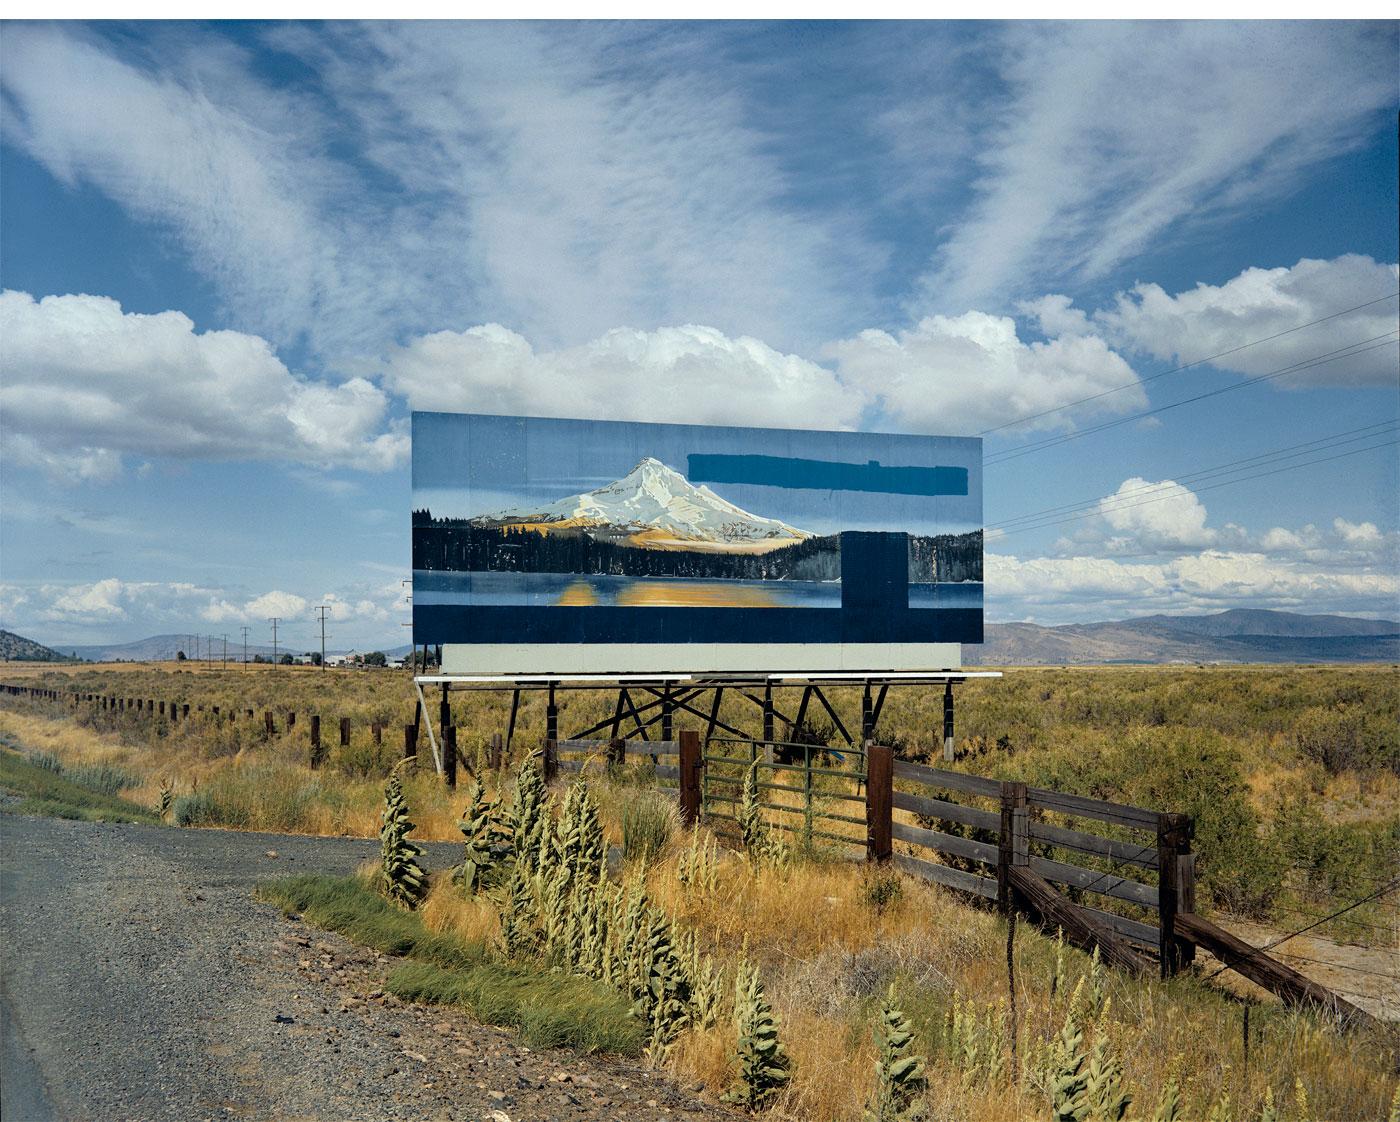 Billboard by Stephen Shore